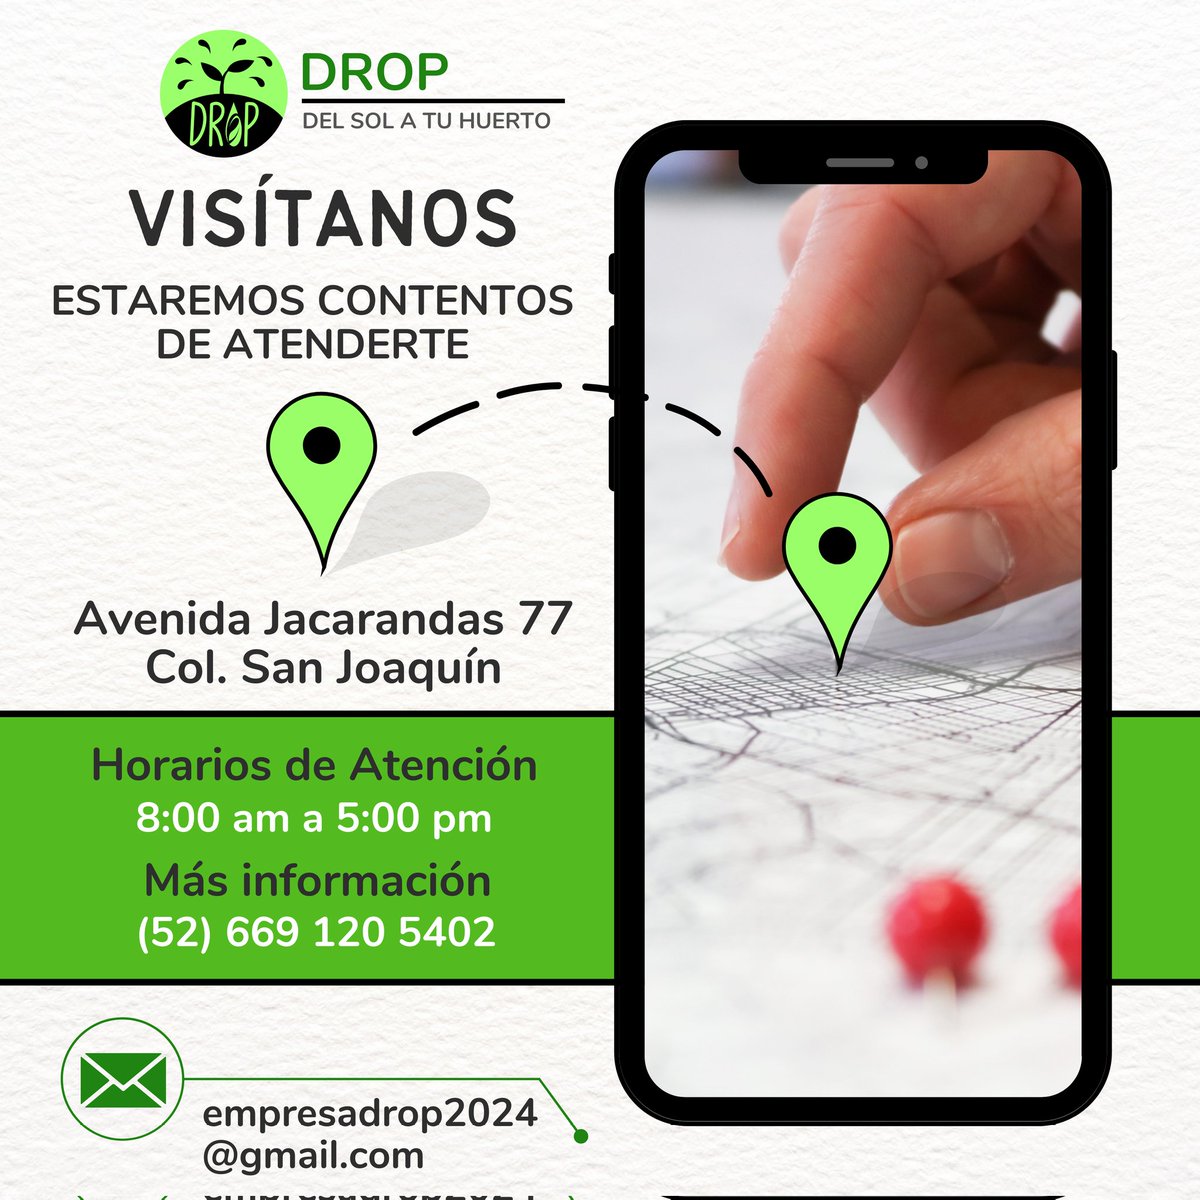 ¡Visitanos! #Drop #SistemasDeRiego #Ambientalista